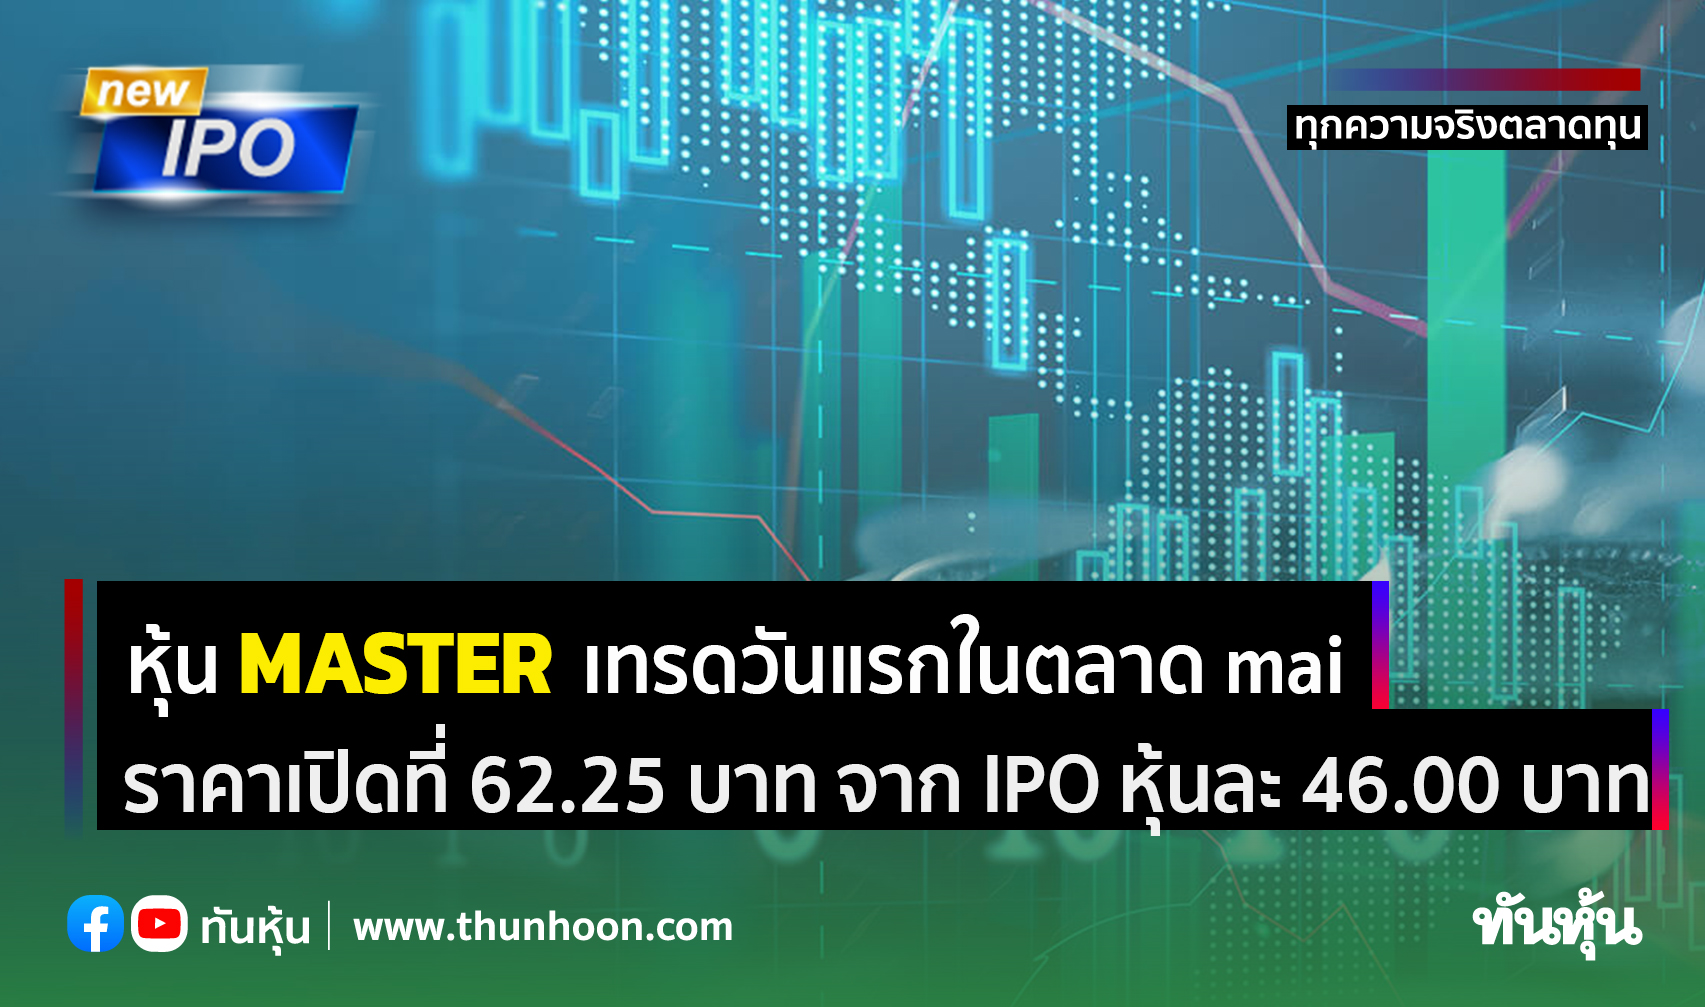 หุ้น MASTER เทรดวันแรกในตลาด mai ราคาเปิดที่ 62.25 บาท เพิ่มขึ้น 35.33% จาก IPO 